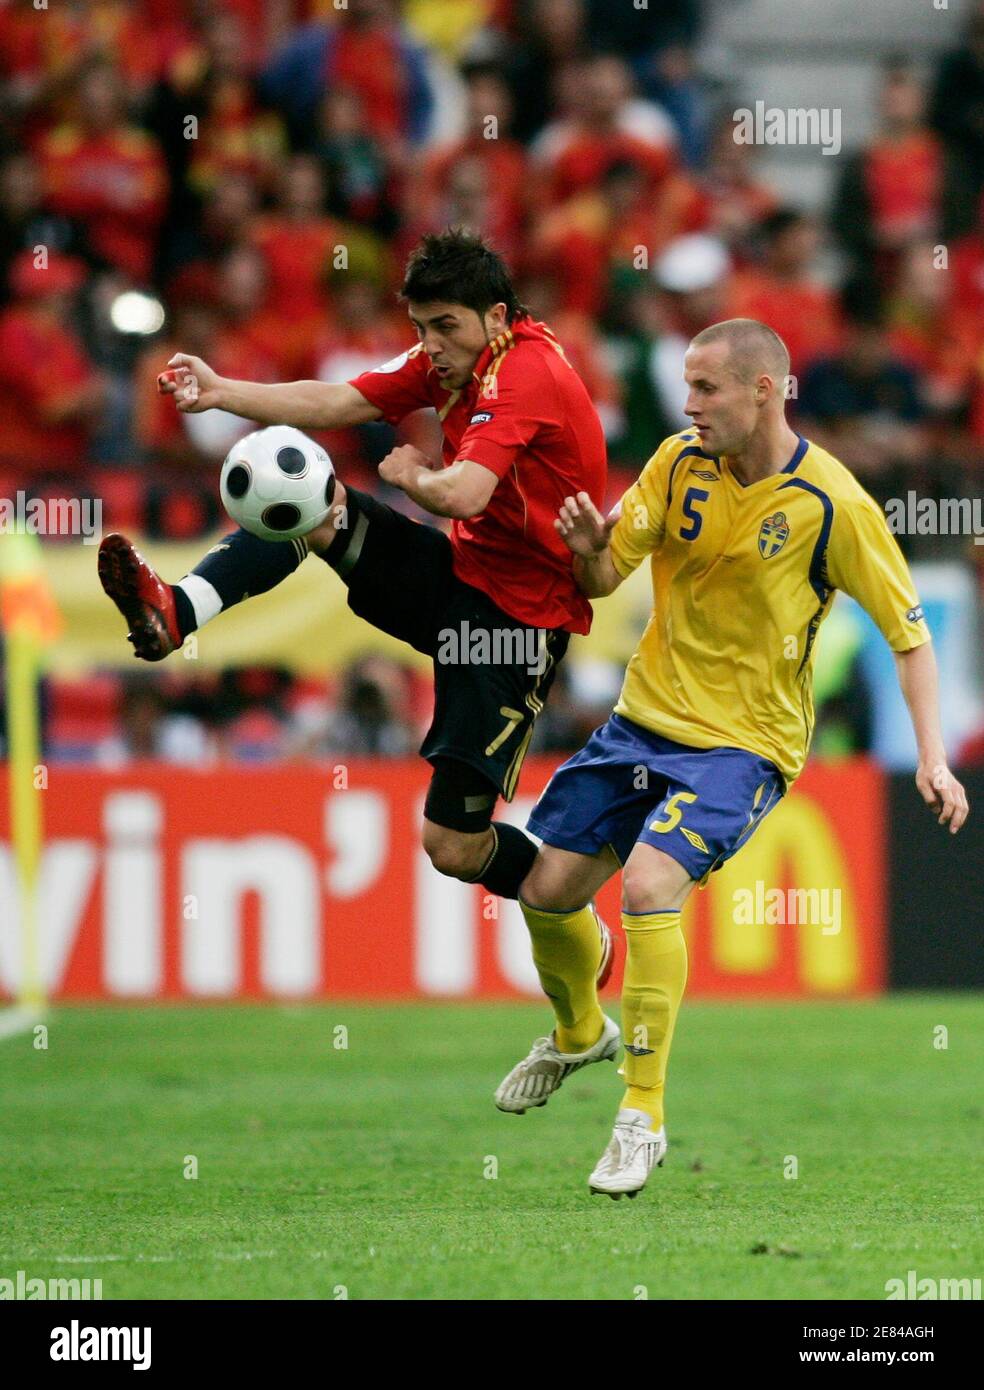 El jugador español David Villa (L) salta por el balón perseguido por el sueco Fredrik Stoor durante su partido de fútbol del Grupo D Euro 2008 en el estadio Tivoli Neu de Innsbruck, 14 de junio de 2008. REUTERS/Miguel Vidal (AUSTRIA) MÓVIL FUERA. SÓLO PARA USO EDITORIAL Foto de stock